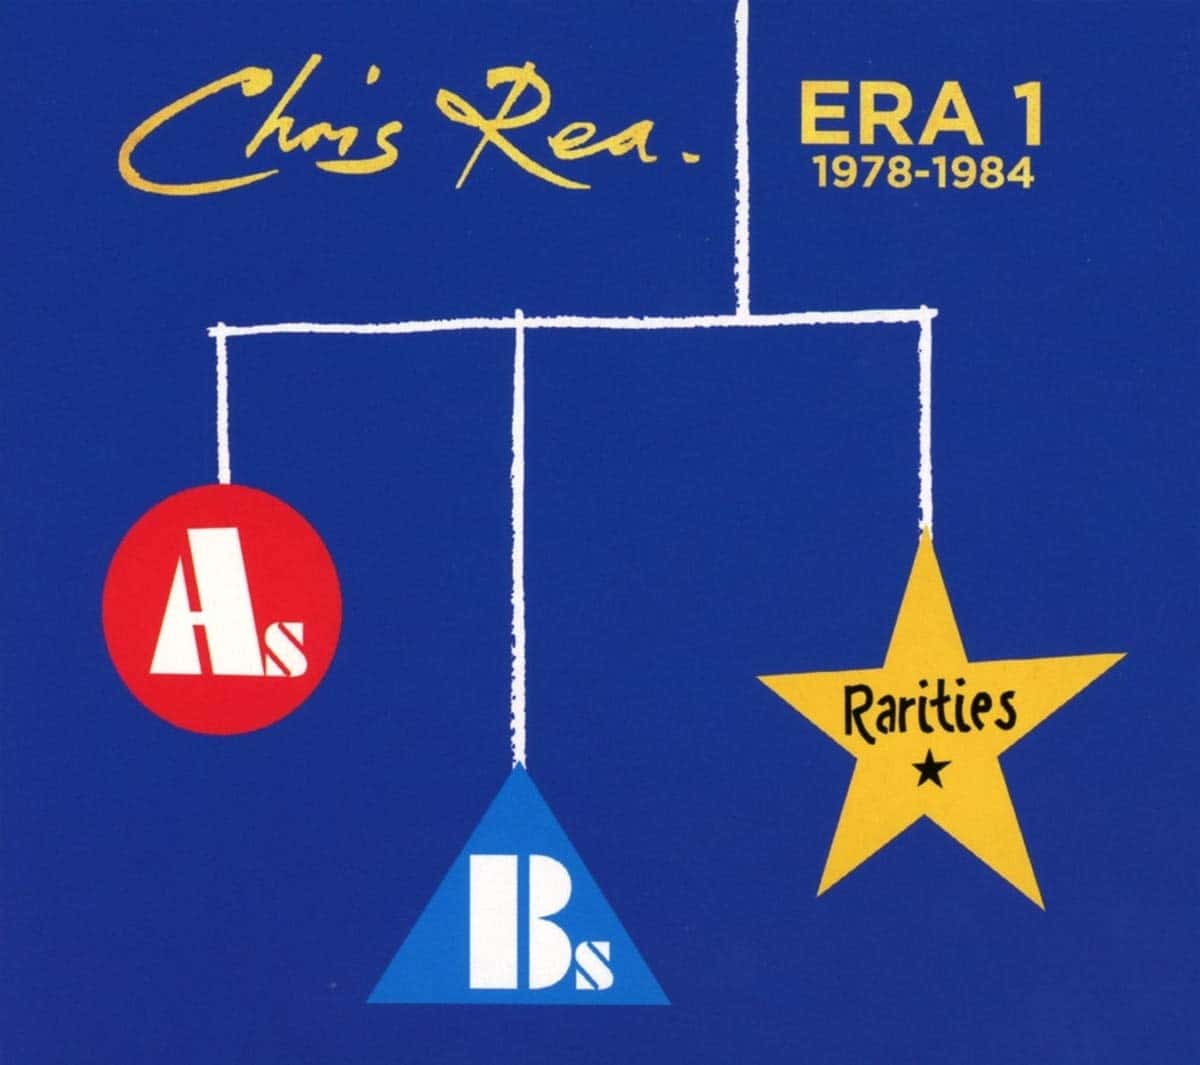 CHRIS REA - Era 1 - 1978-1984